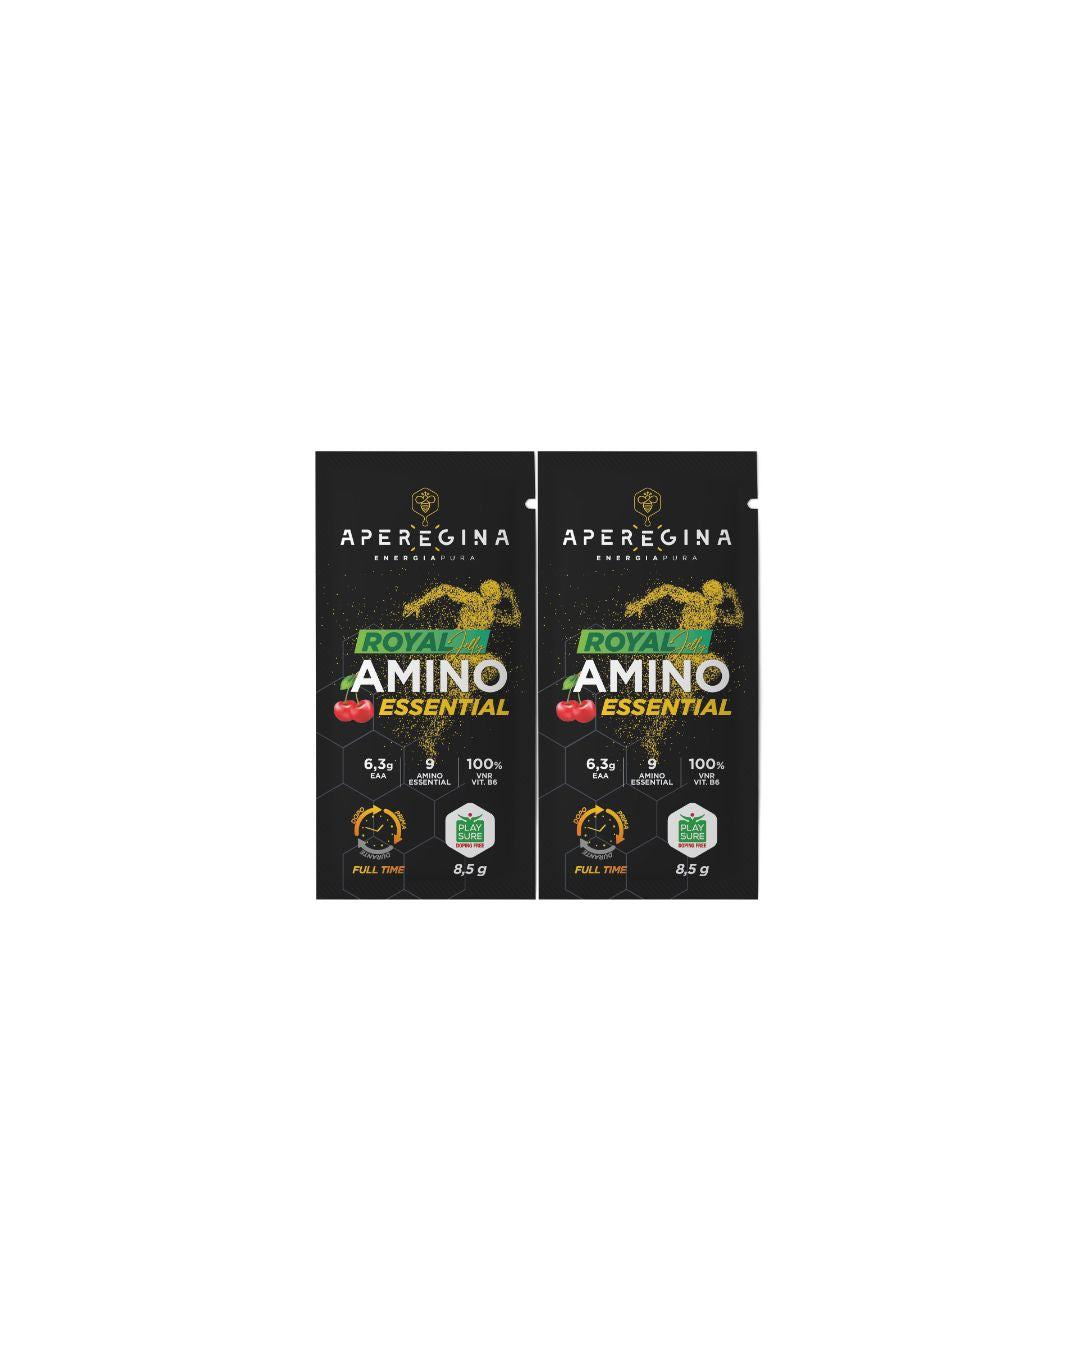 Royal Amino Essential